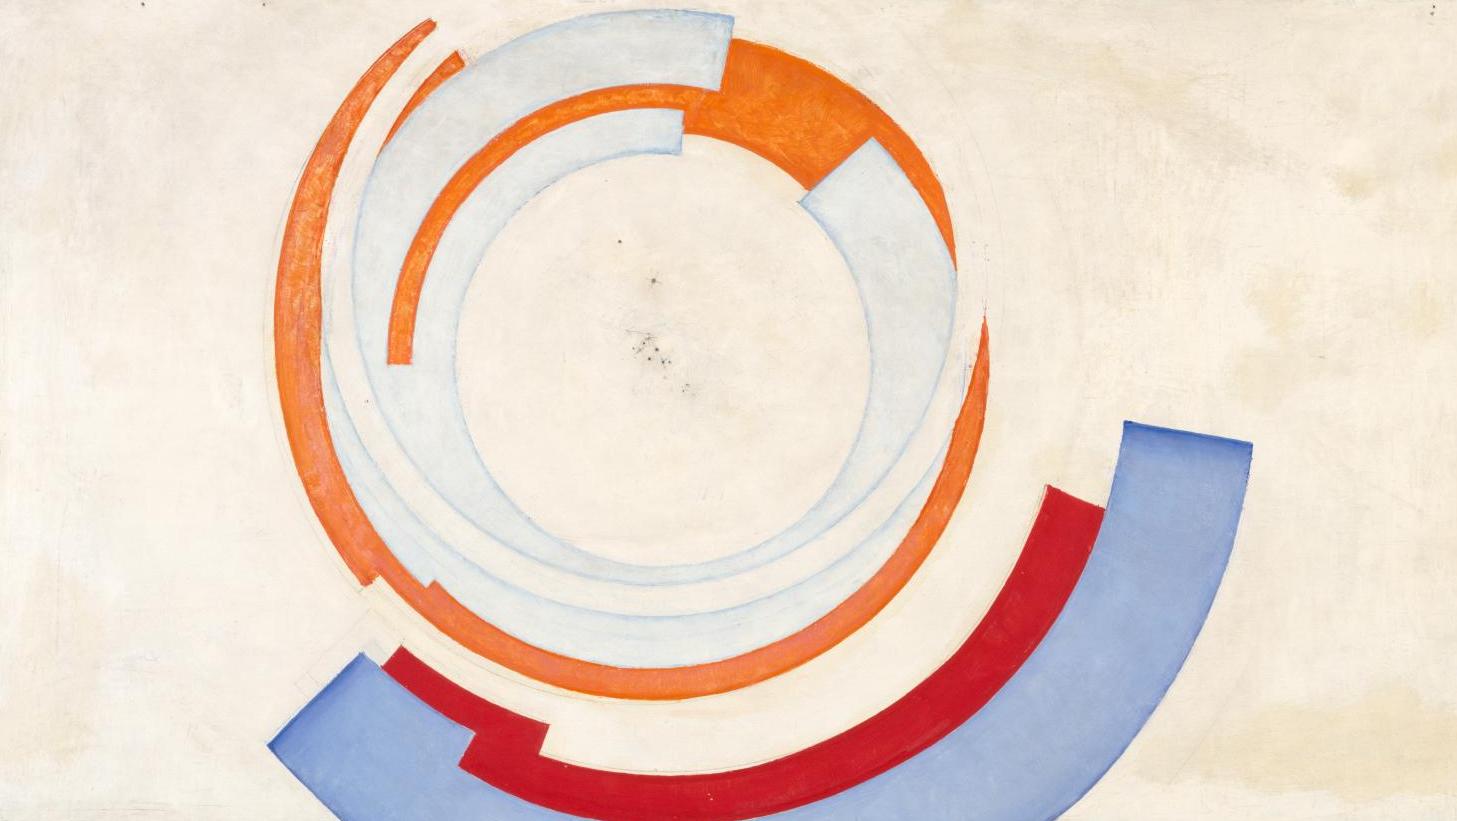 Frantisek Kupka (1871-1957), Soleil, 1930-1935, huile sur toile, 48,5 x 73 cm, Centre... Modernités cosmiques à la fondation Vasarely